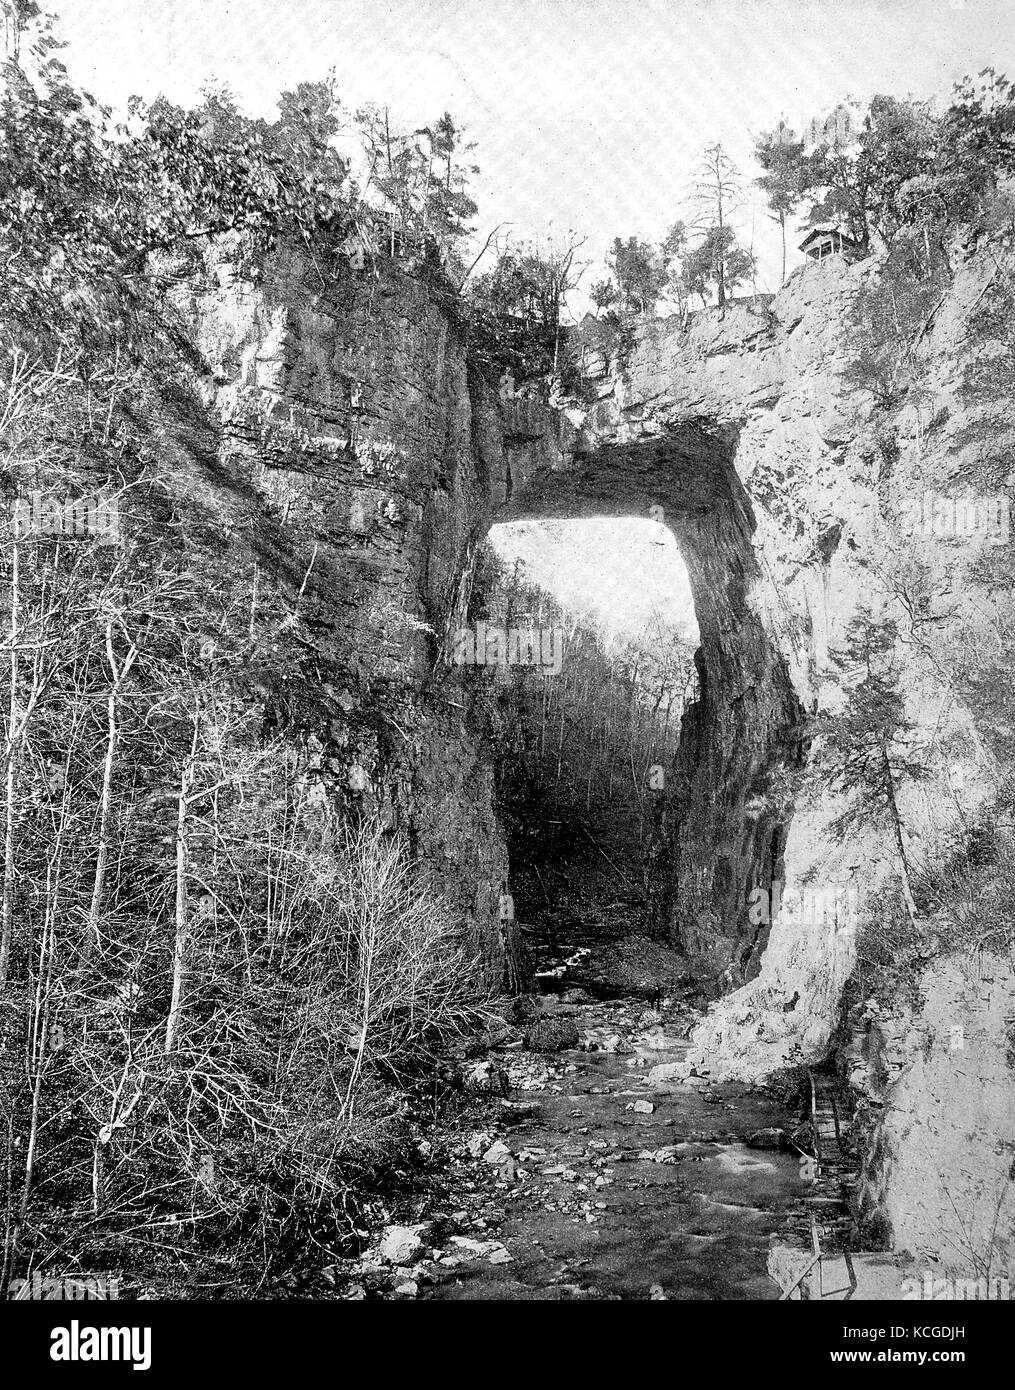 Estados Unidos de América, el paisaje en las montañas Blue Ridge, un puente de roca natural, estado de Virginia, mejor reproducción digital de una foto histórica desde el año 1899 (estimado) Foto de stock